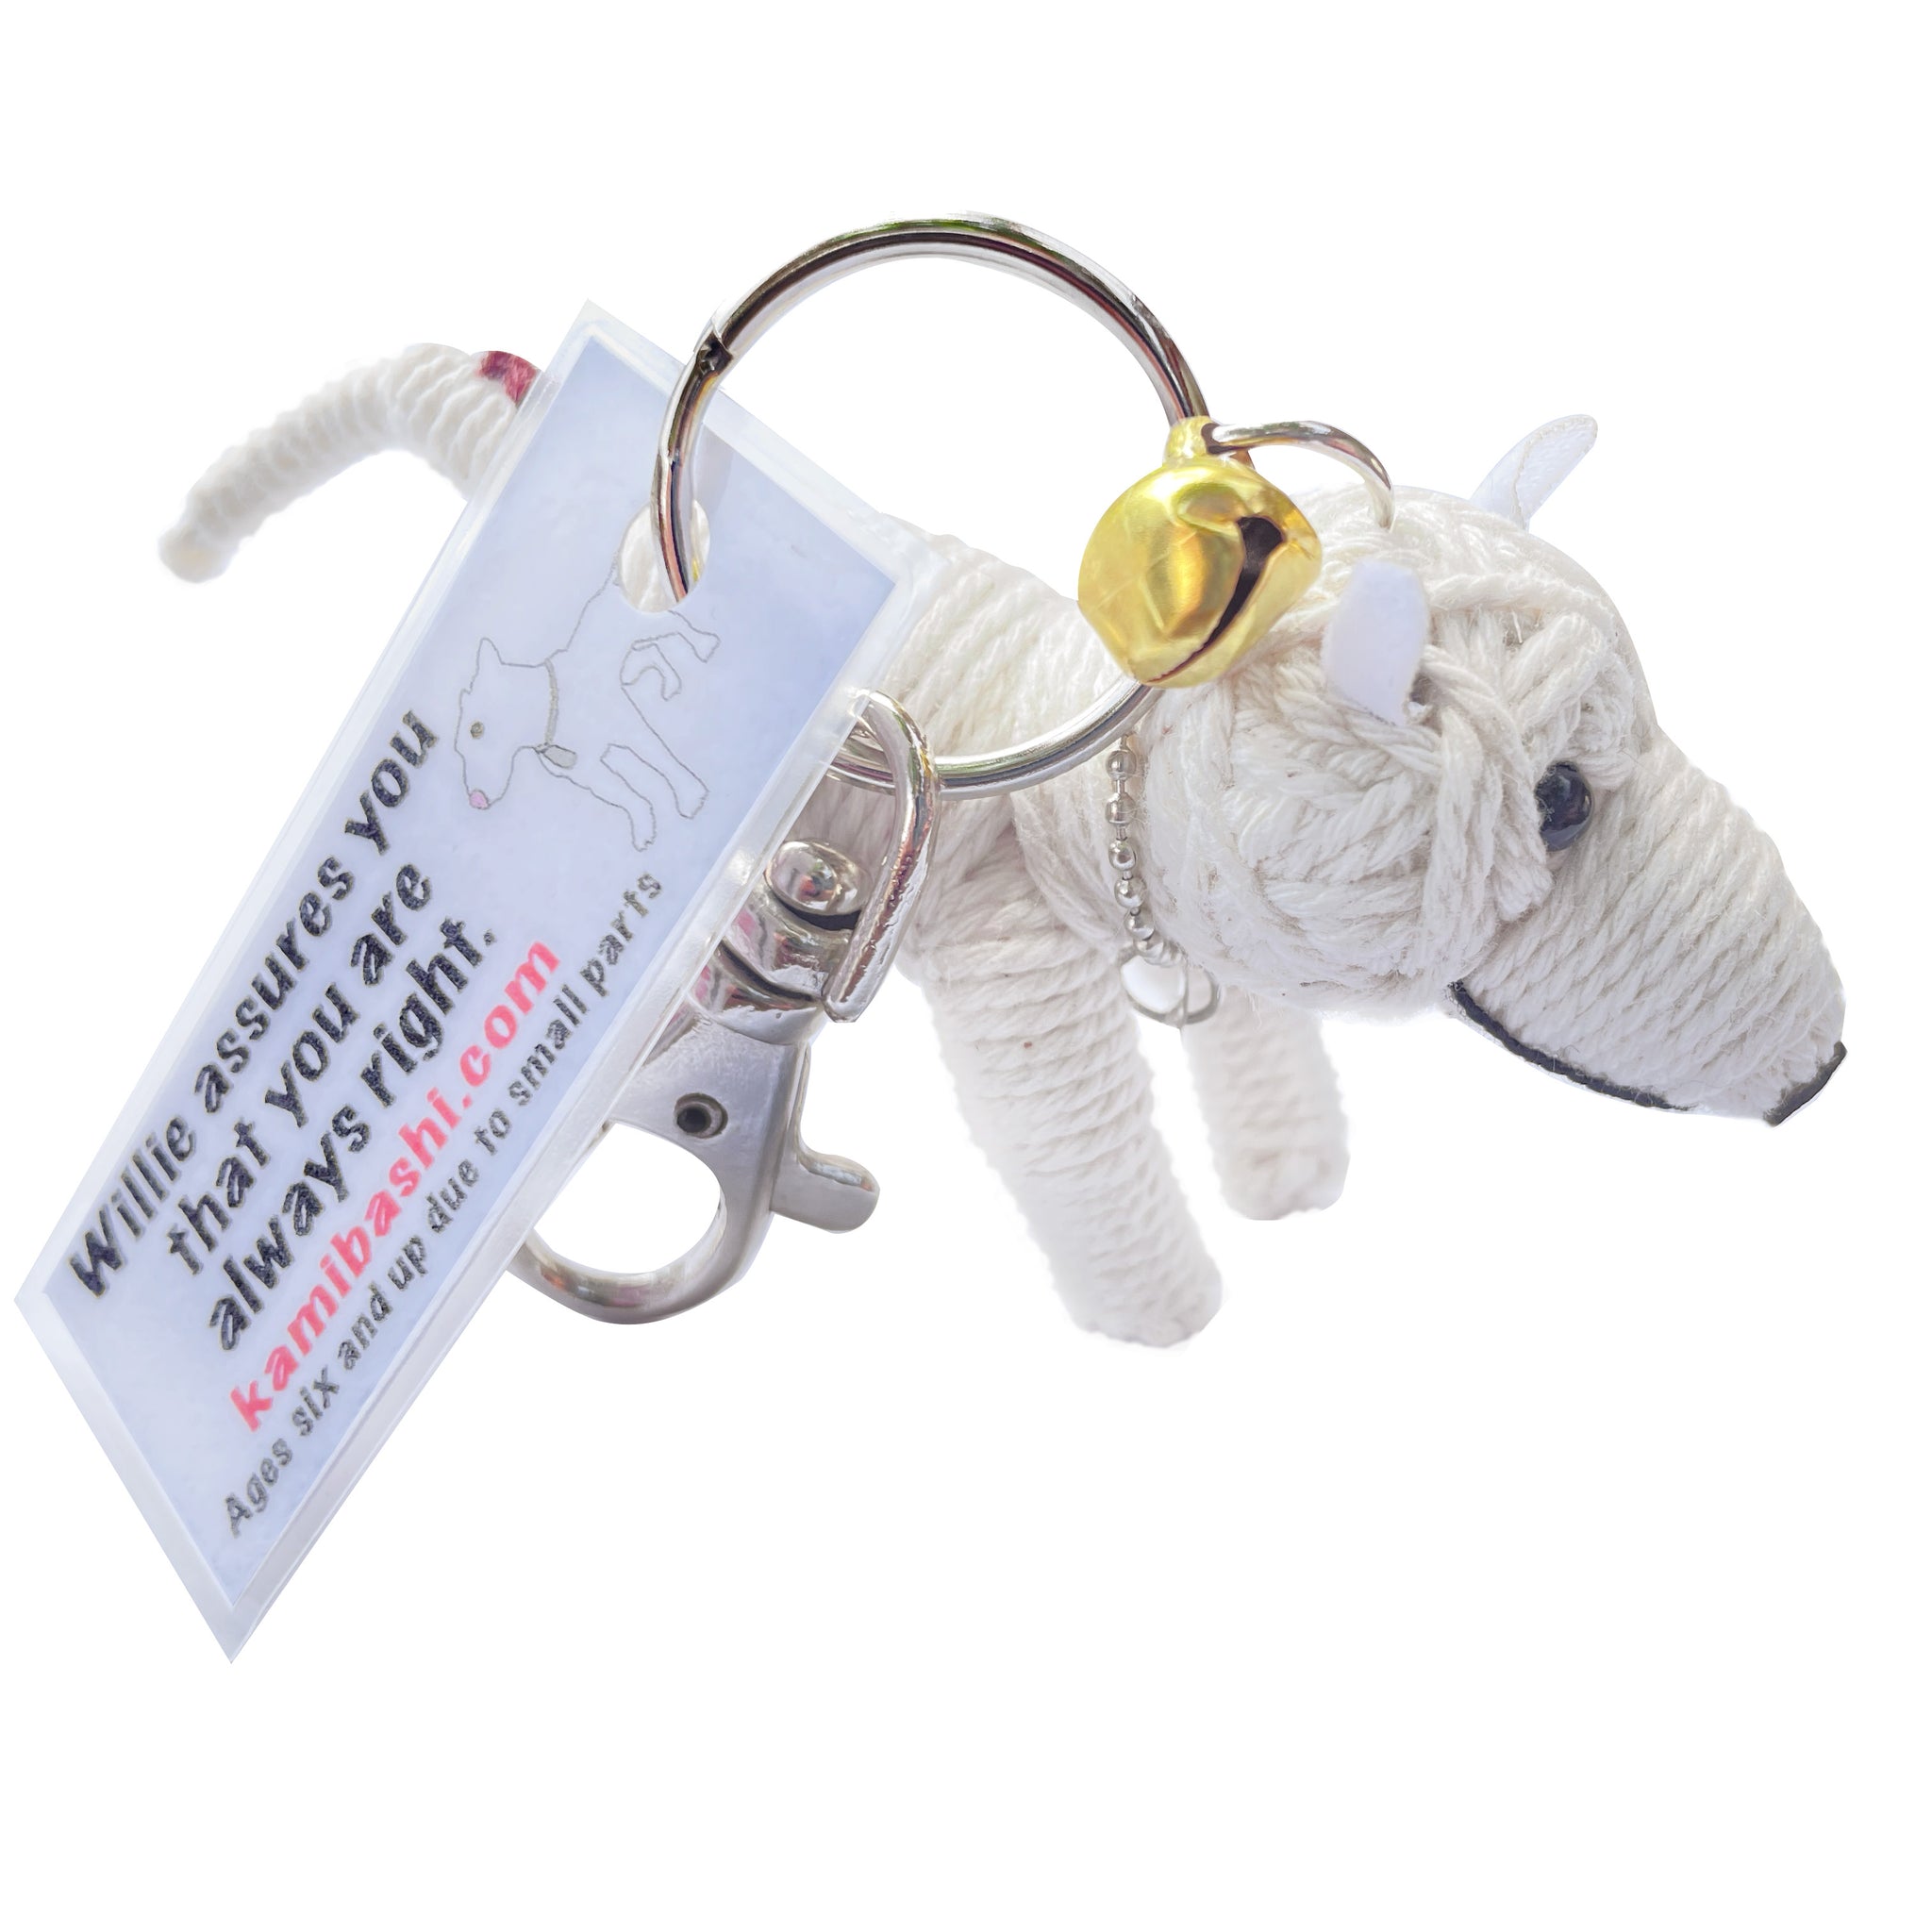 General Patton's Dog Willie String Doll Keychain